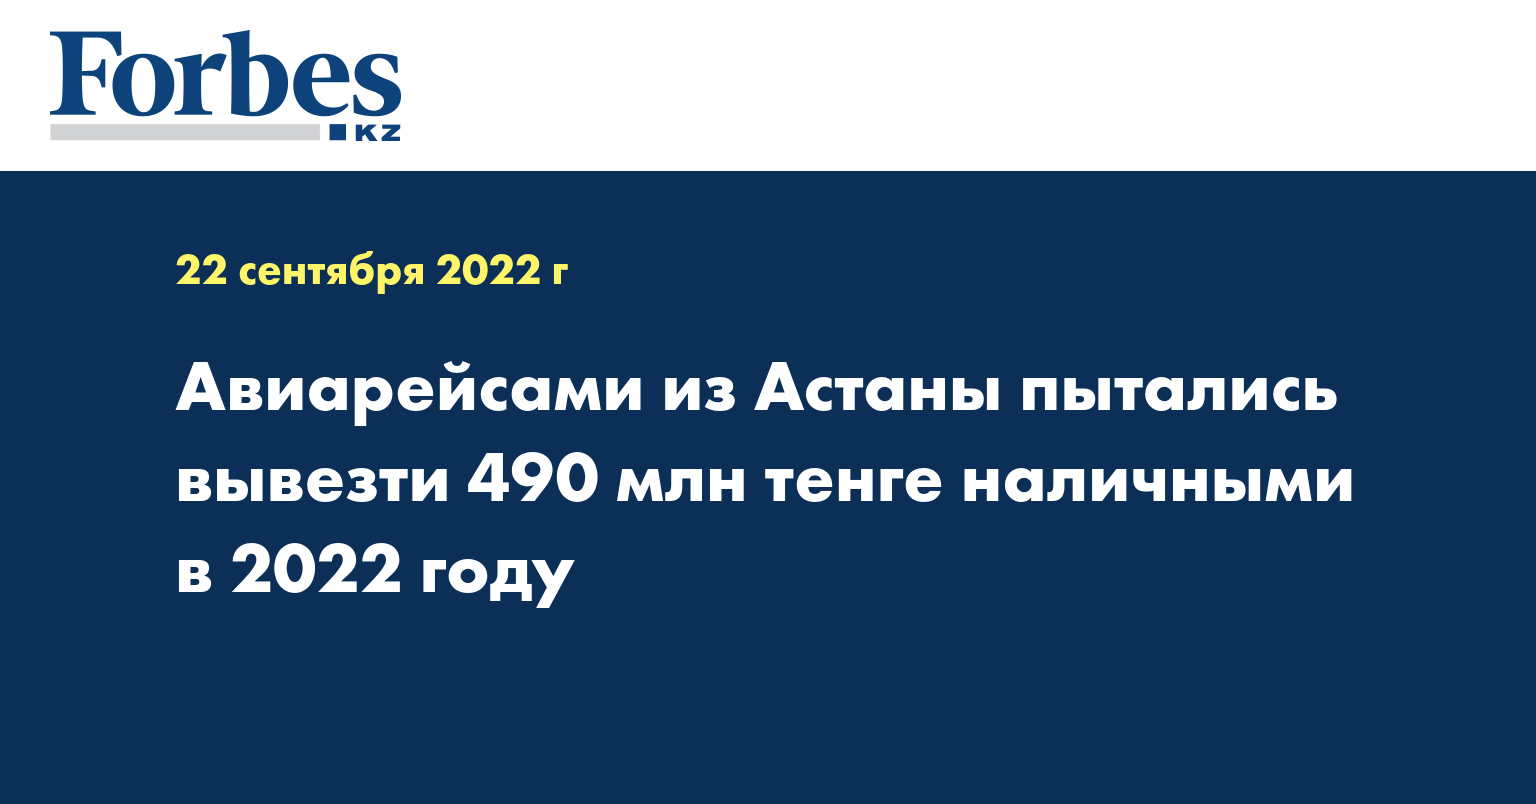 Авиарейсами из Астаны пытались вывезти 490 млн тенге наличными в 2022 году